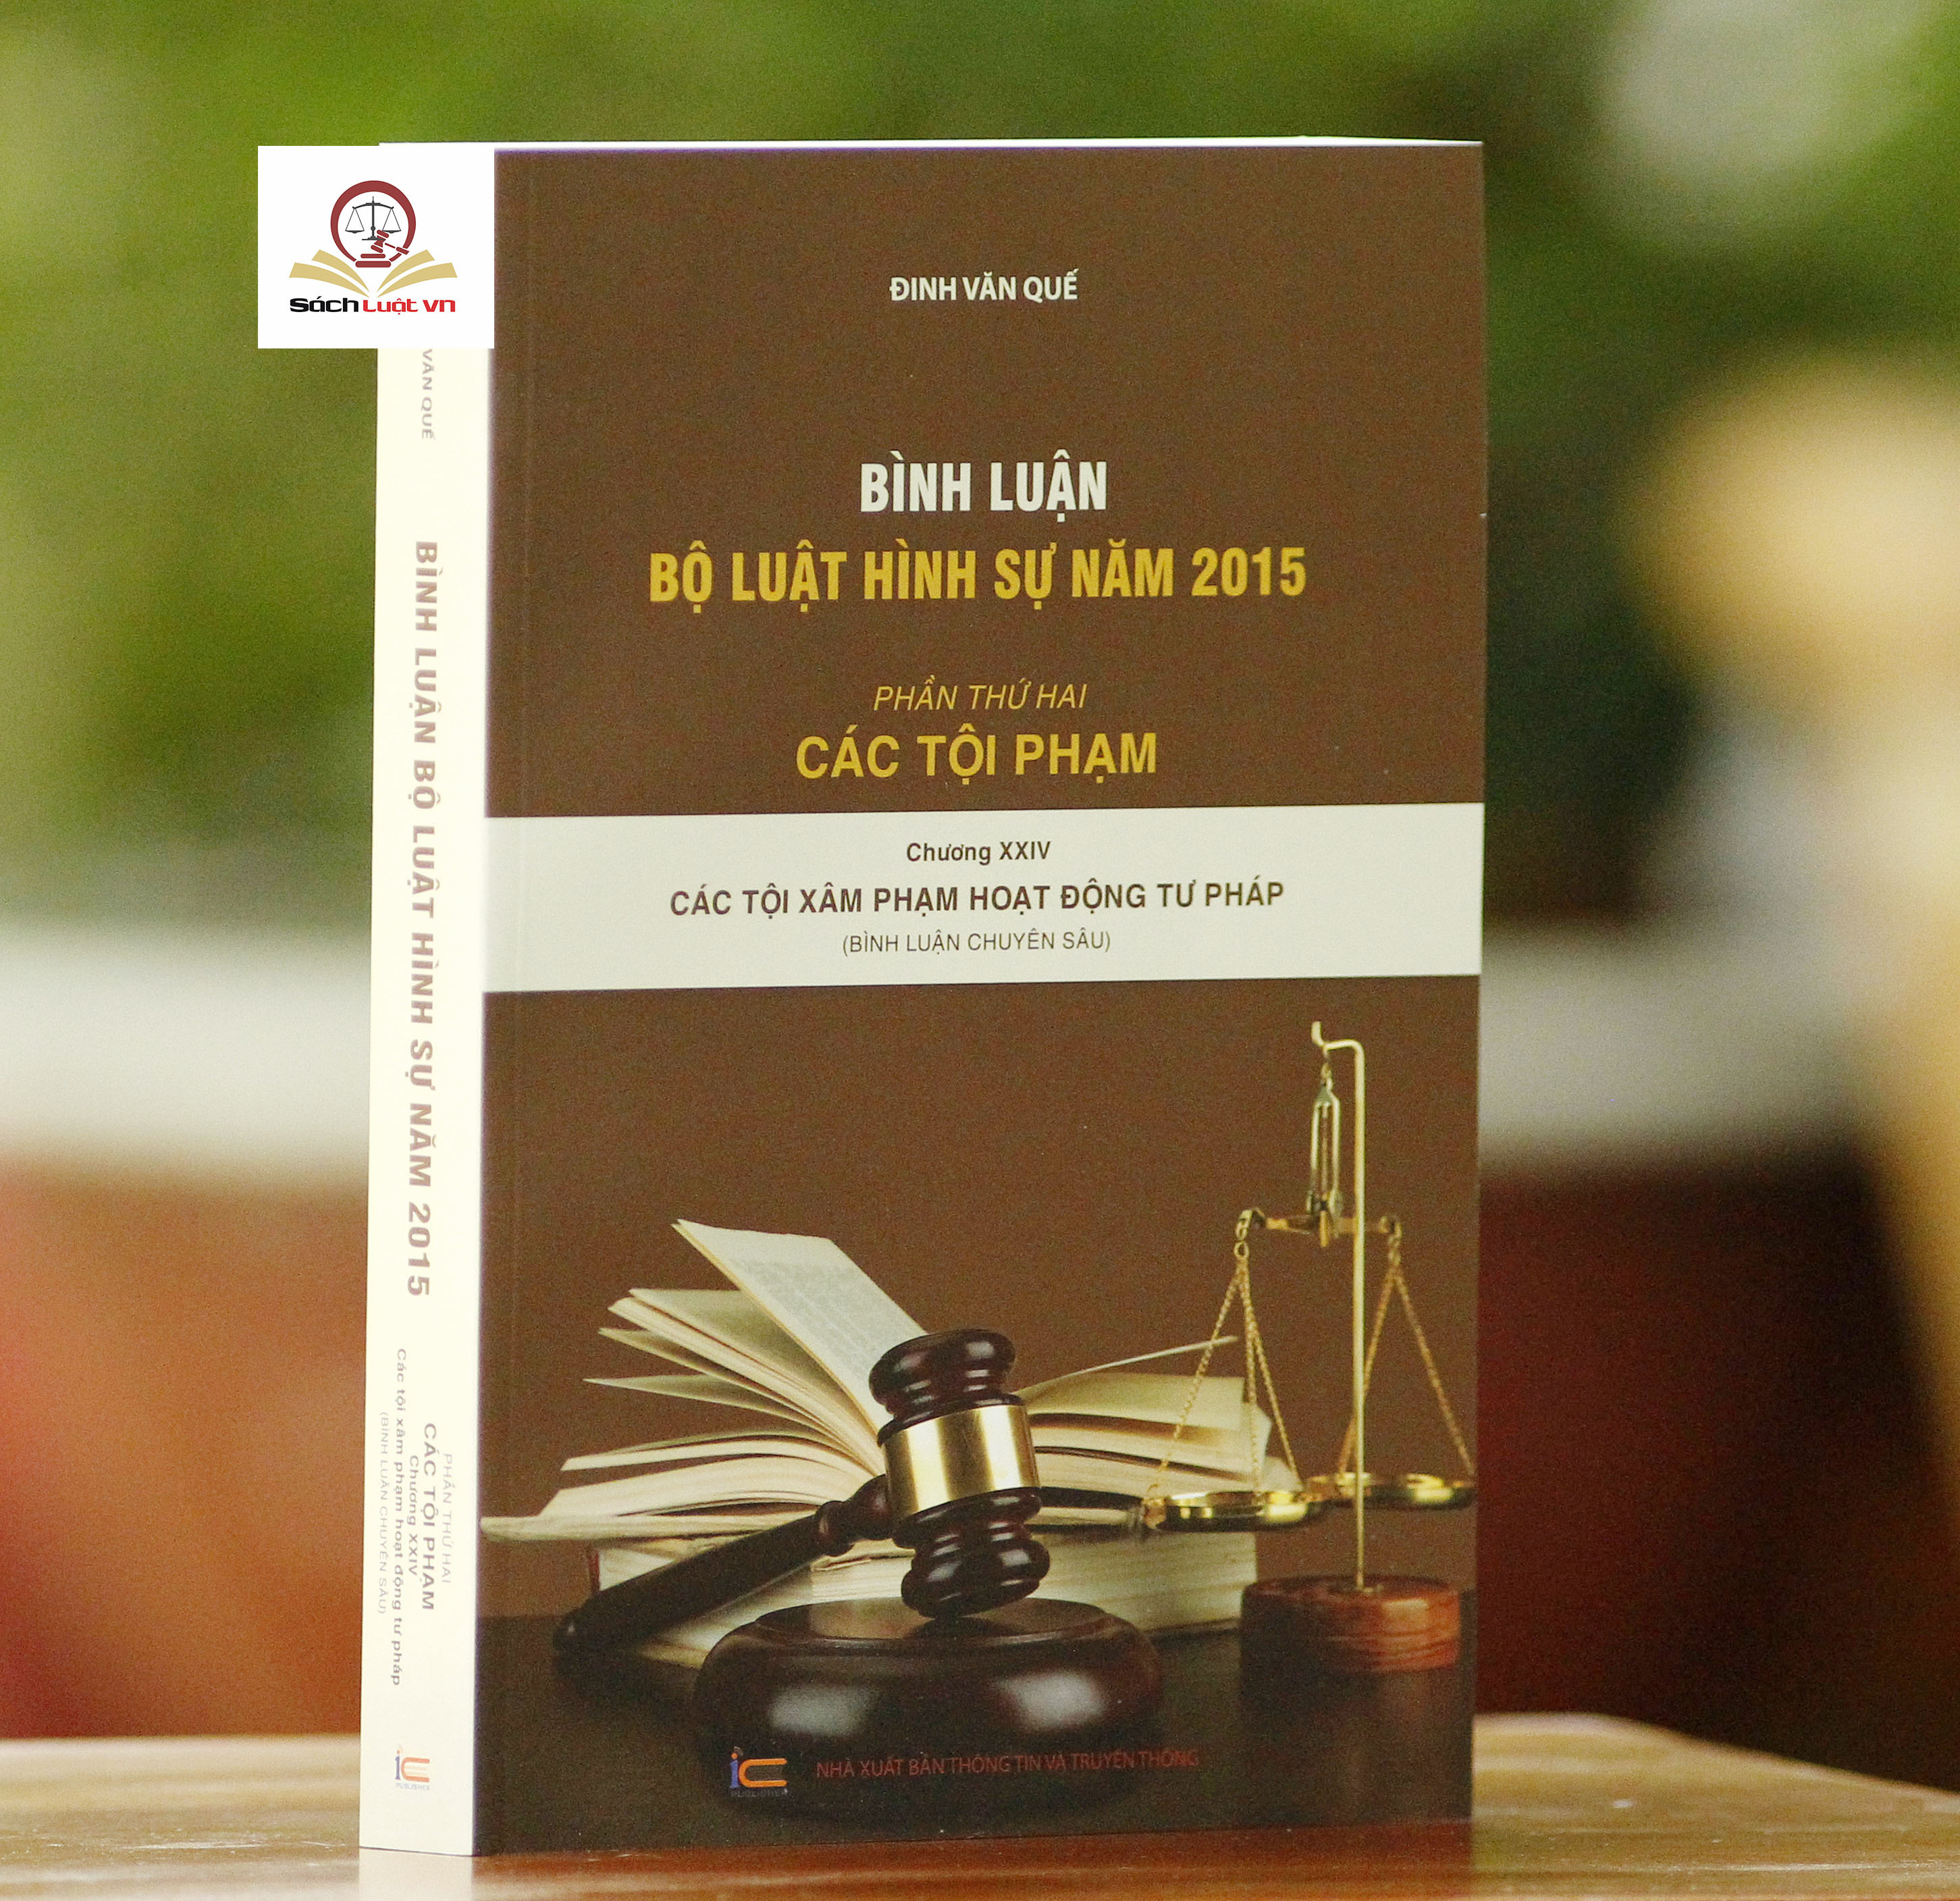 Bình luận Bộ Luật Hình Sự năm 2015 (Bộ 10 cuốn của tác giả Đinh Văn Quế)